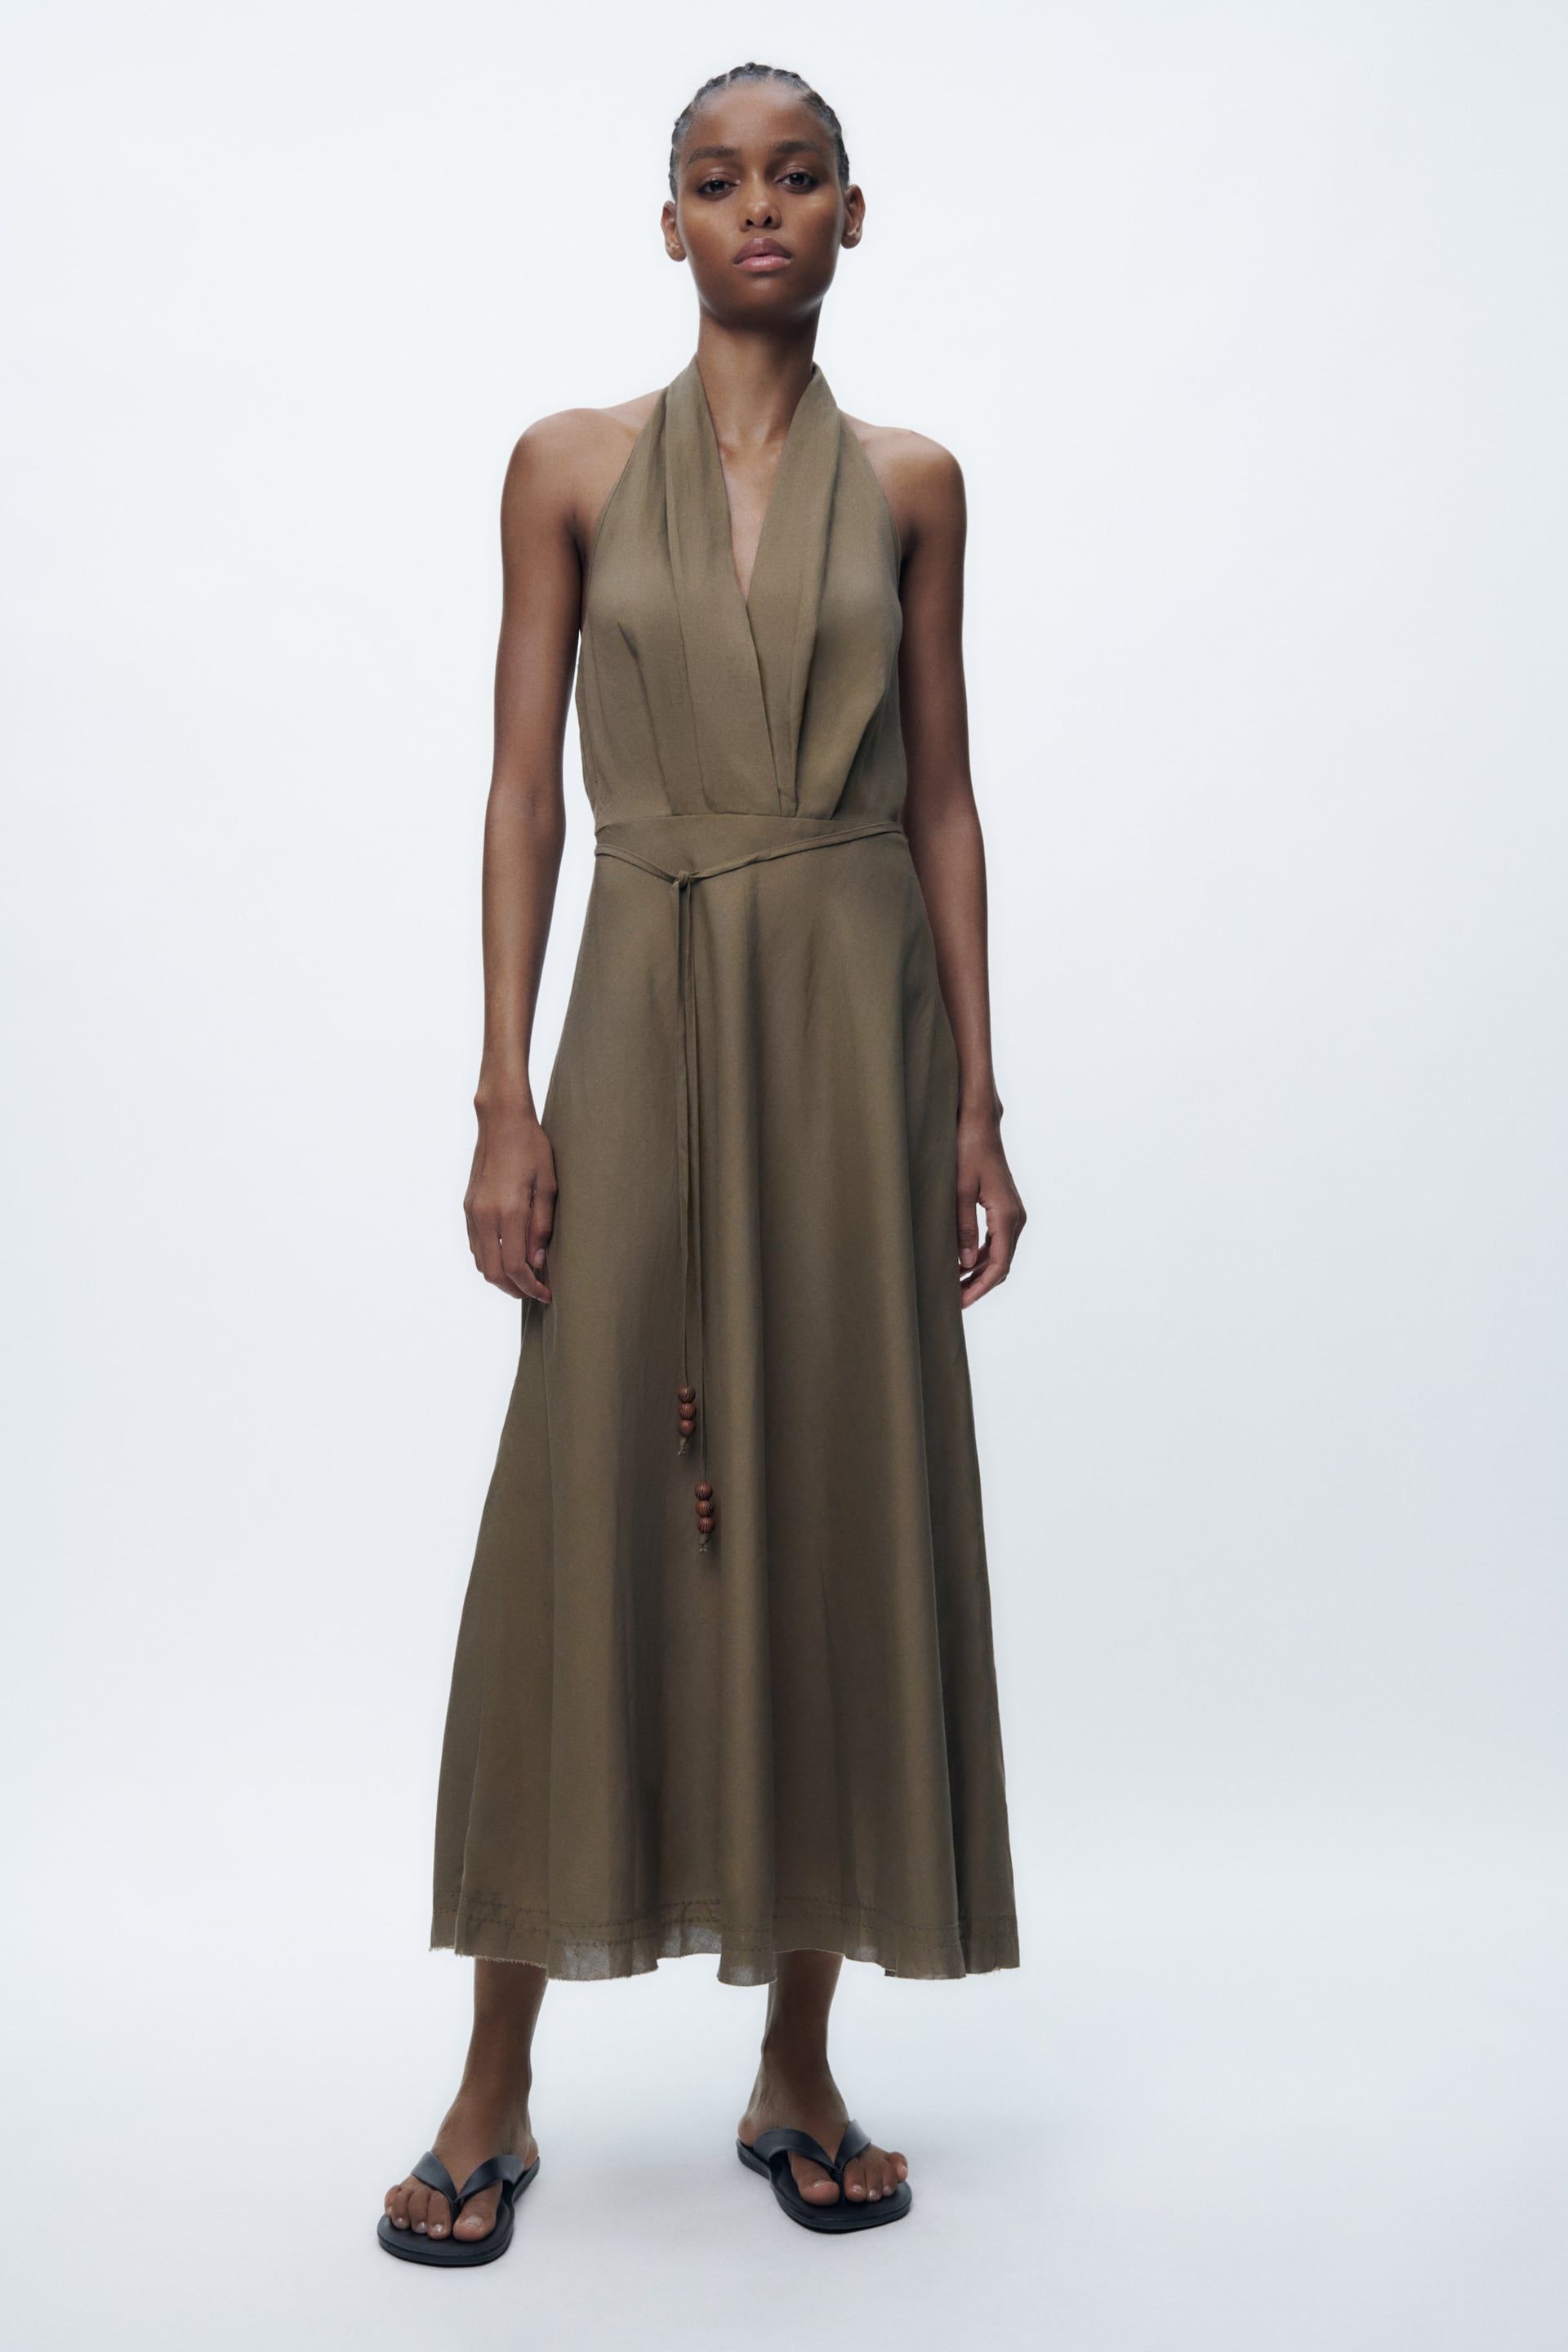 Zara rescata la elegancia vintage de los 70 con vestido sostenible de lino